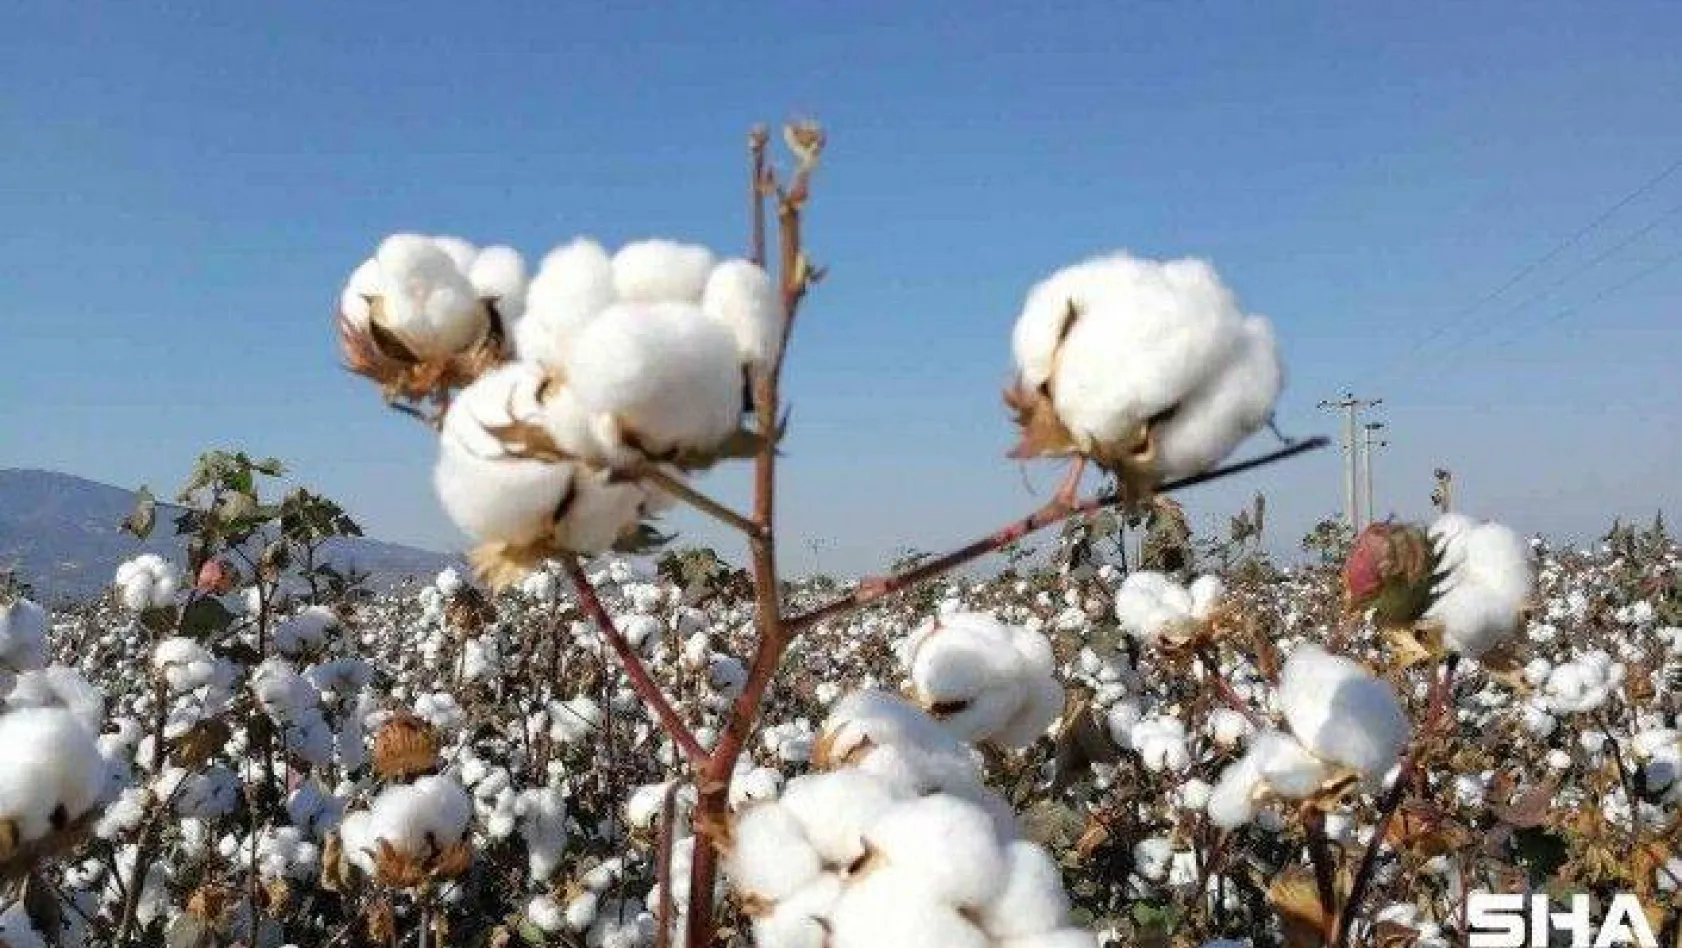 Türkiye'de geliştirilen pamuk tohumu çeşitleri Zambiya'da tescillendi